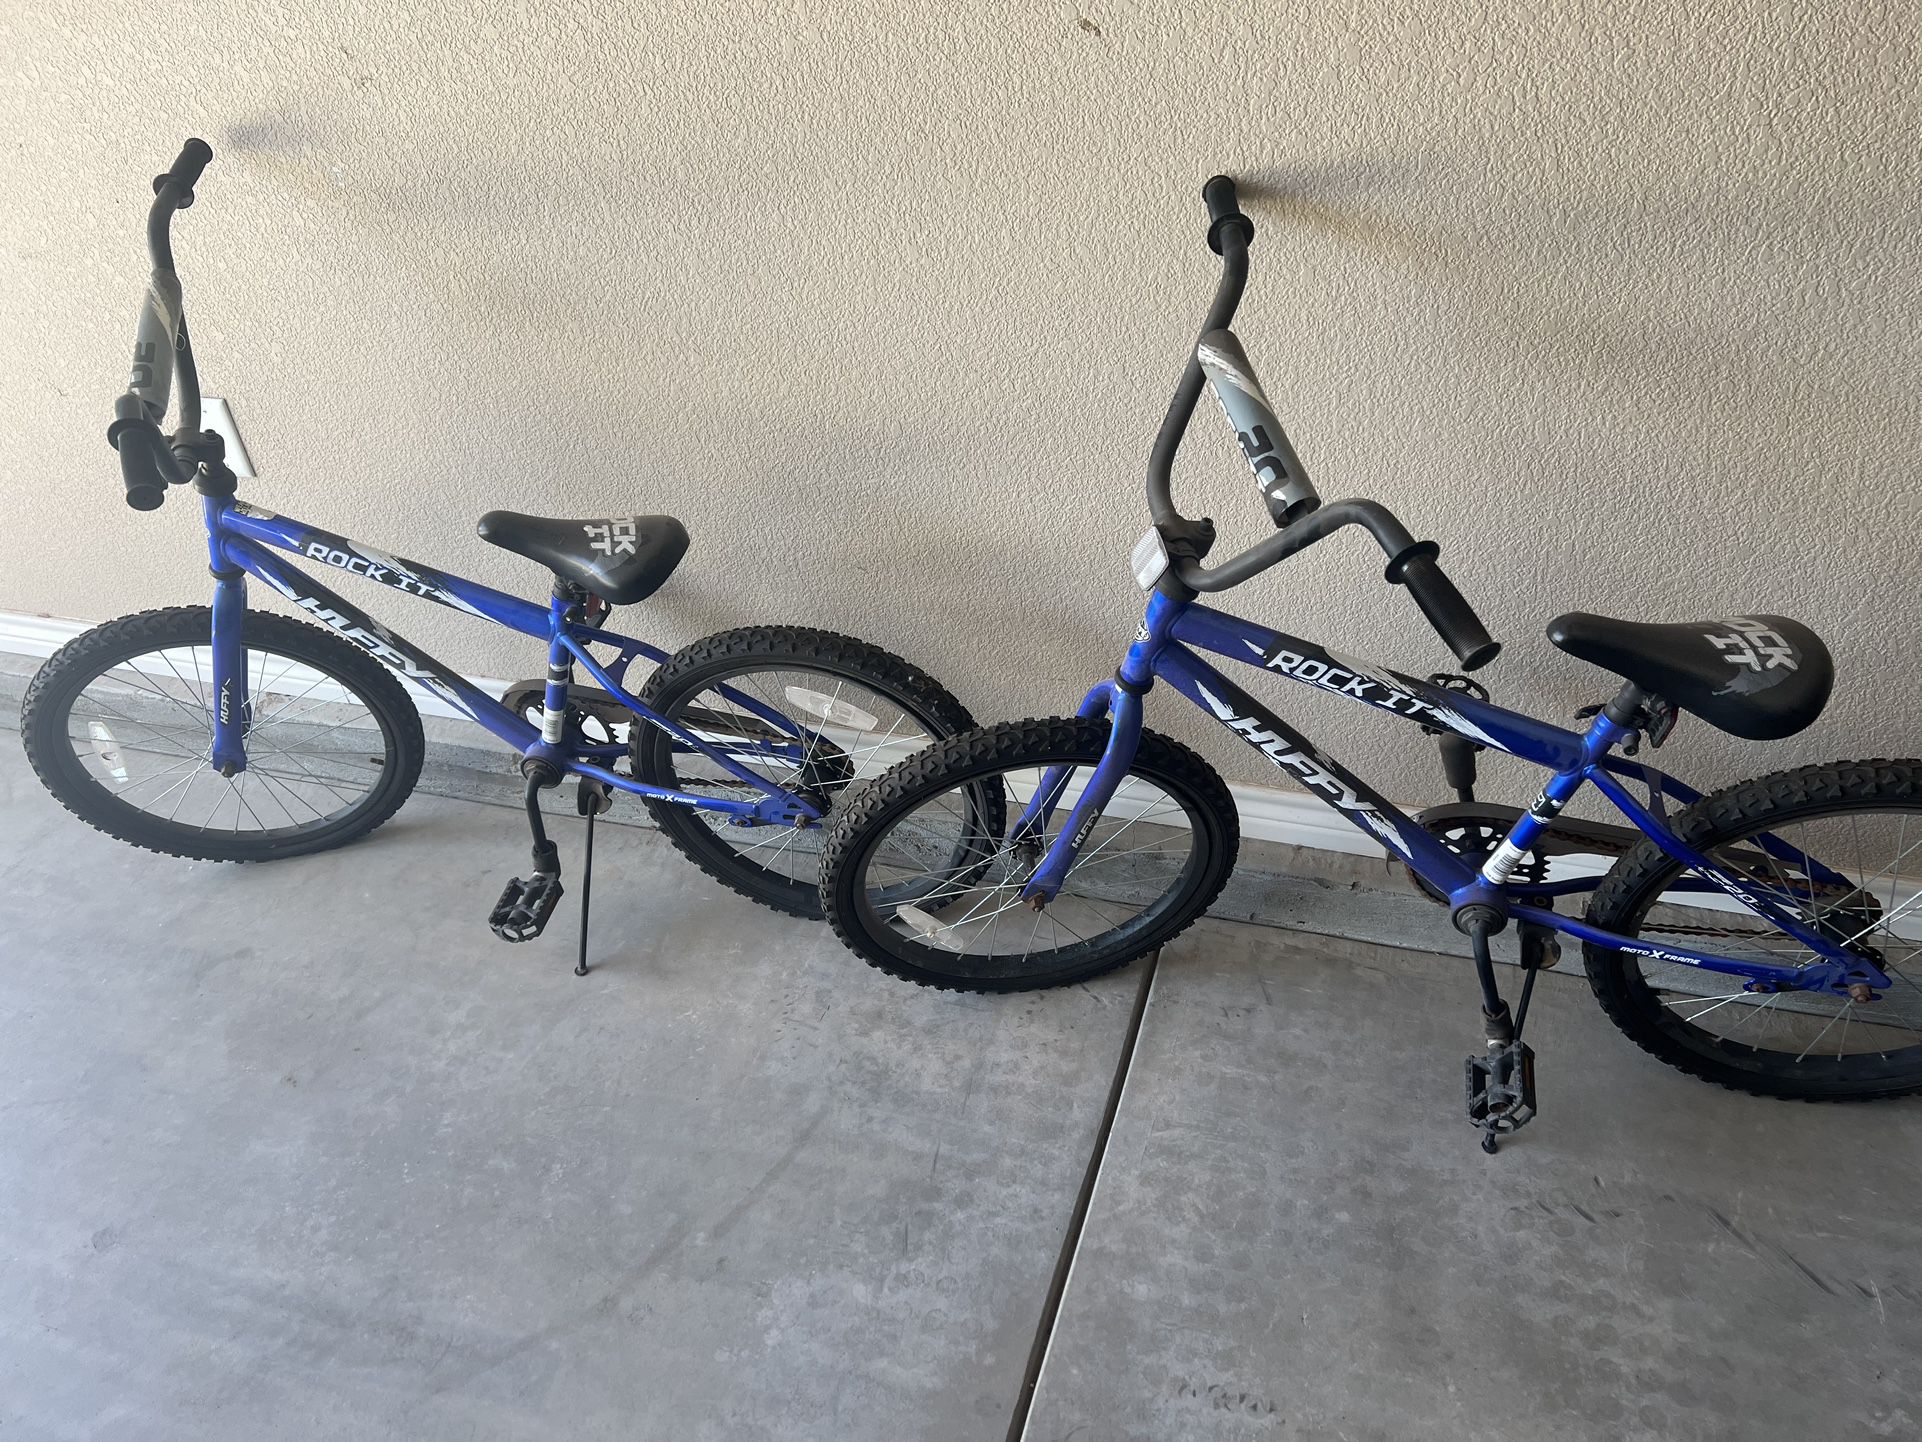 2 Kids Bikes